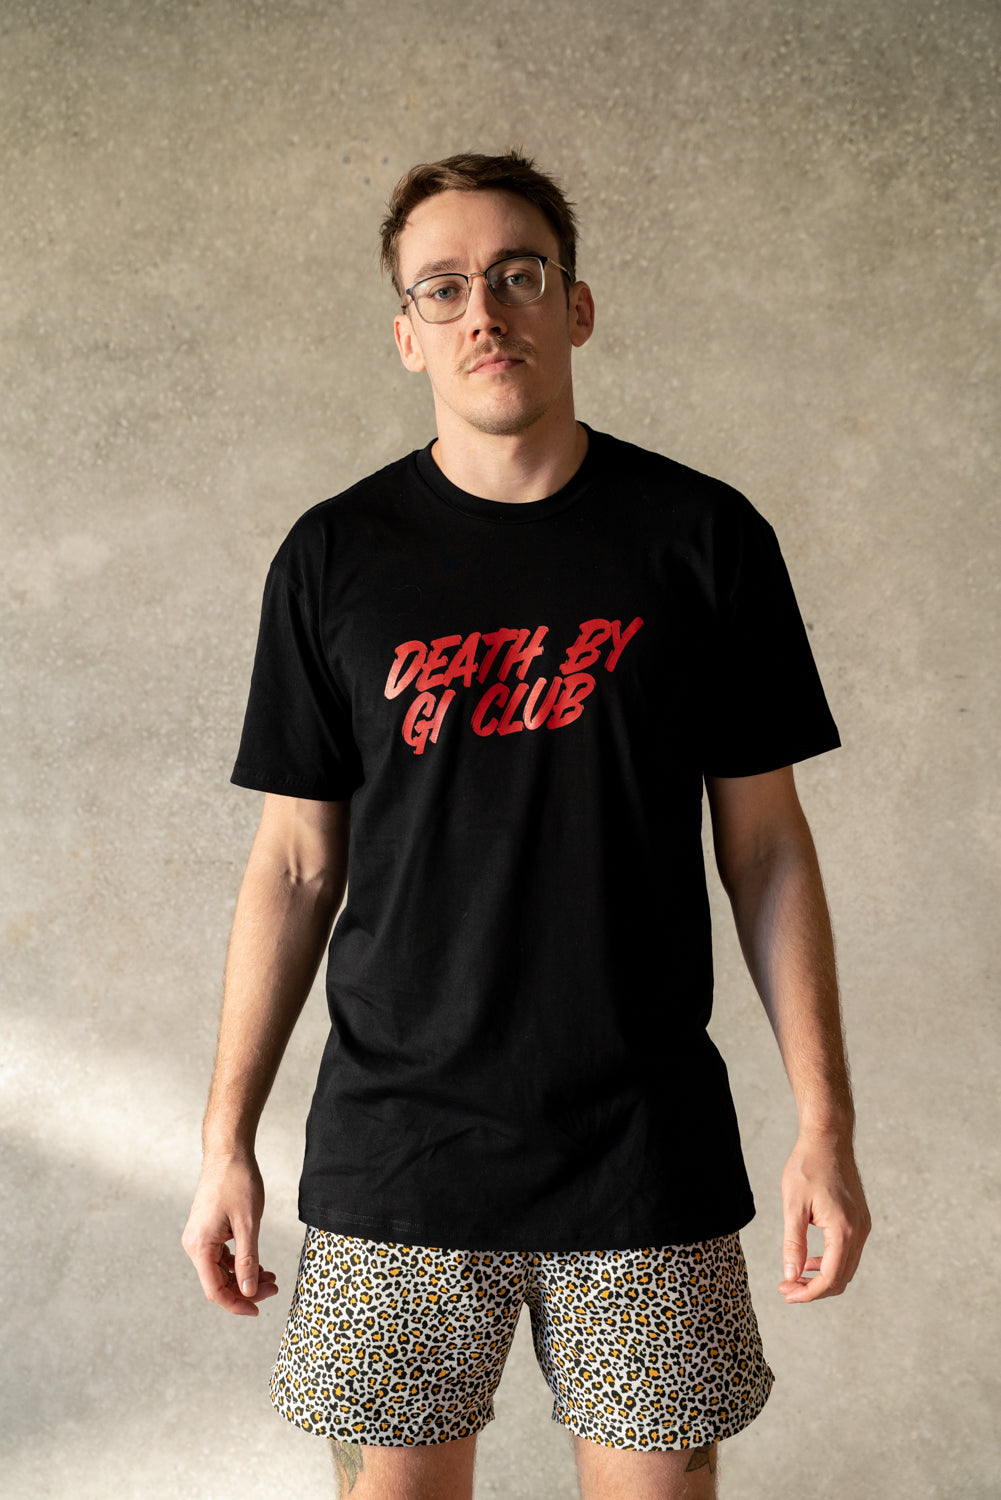 Death By Gi Club T-Shirt